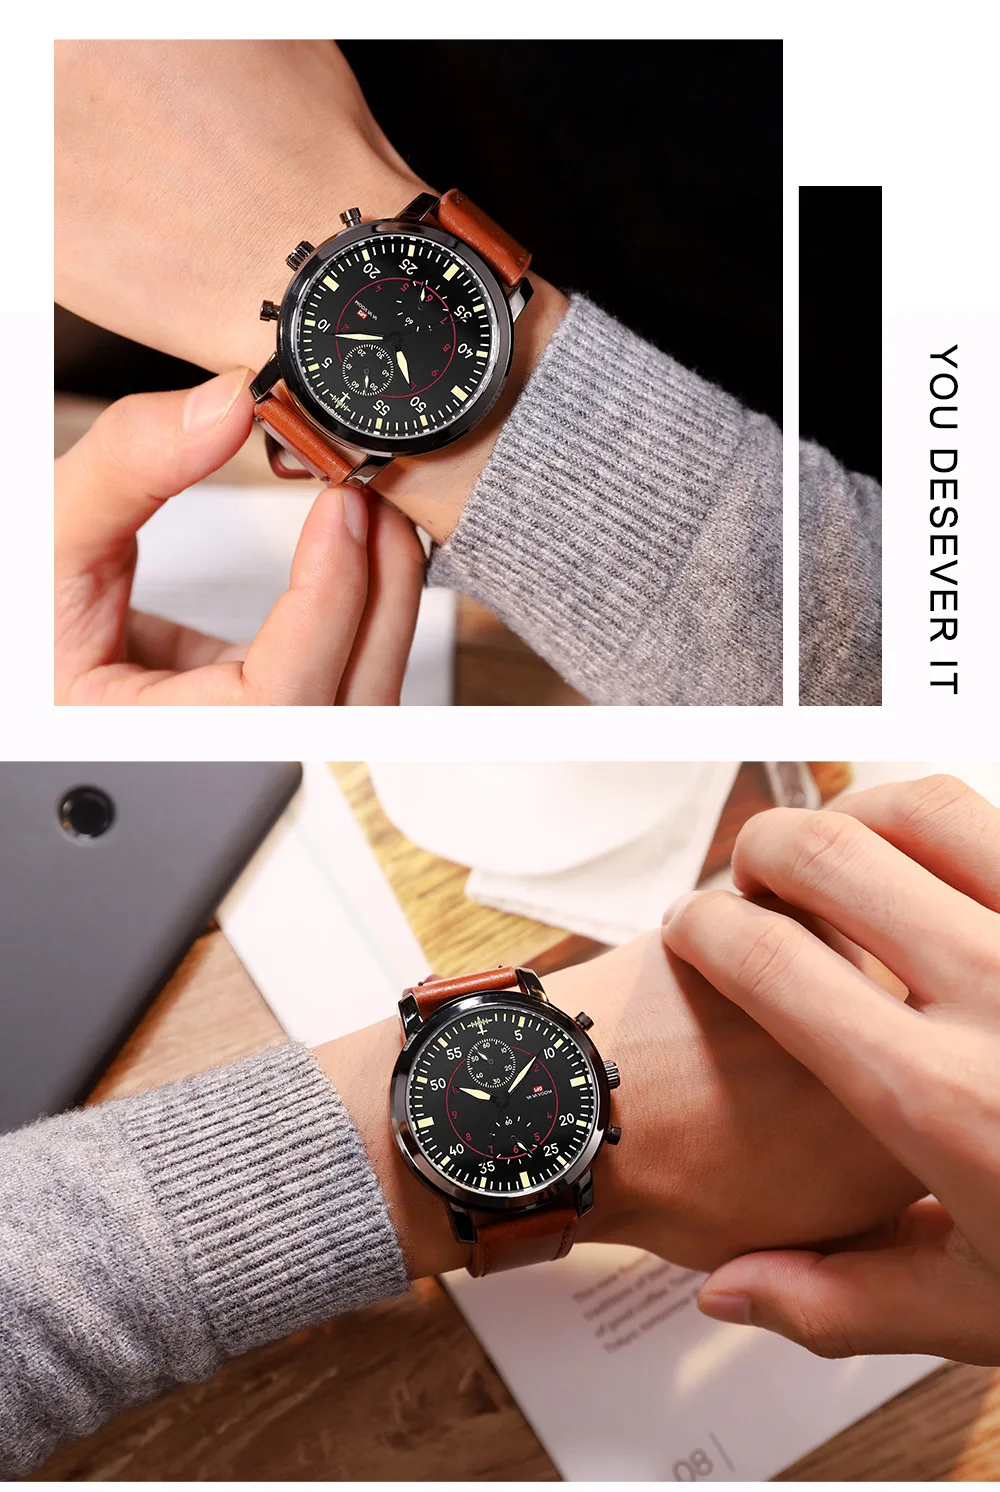 Leecnuo мужские уличные спортивные часы военные часы пилот водонепроницаемые часы с кожаным/нейлоновым Ремешком мужские модные наручные часы